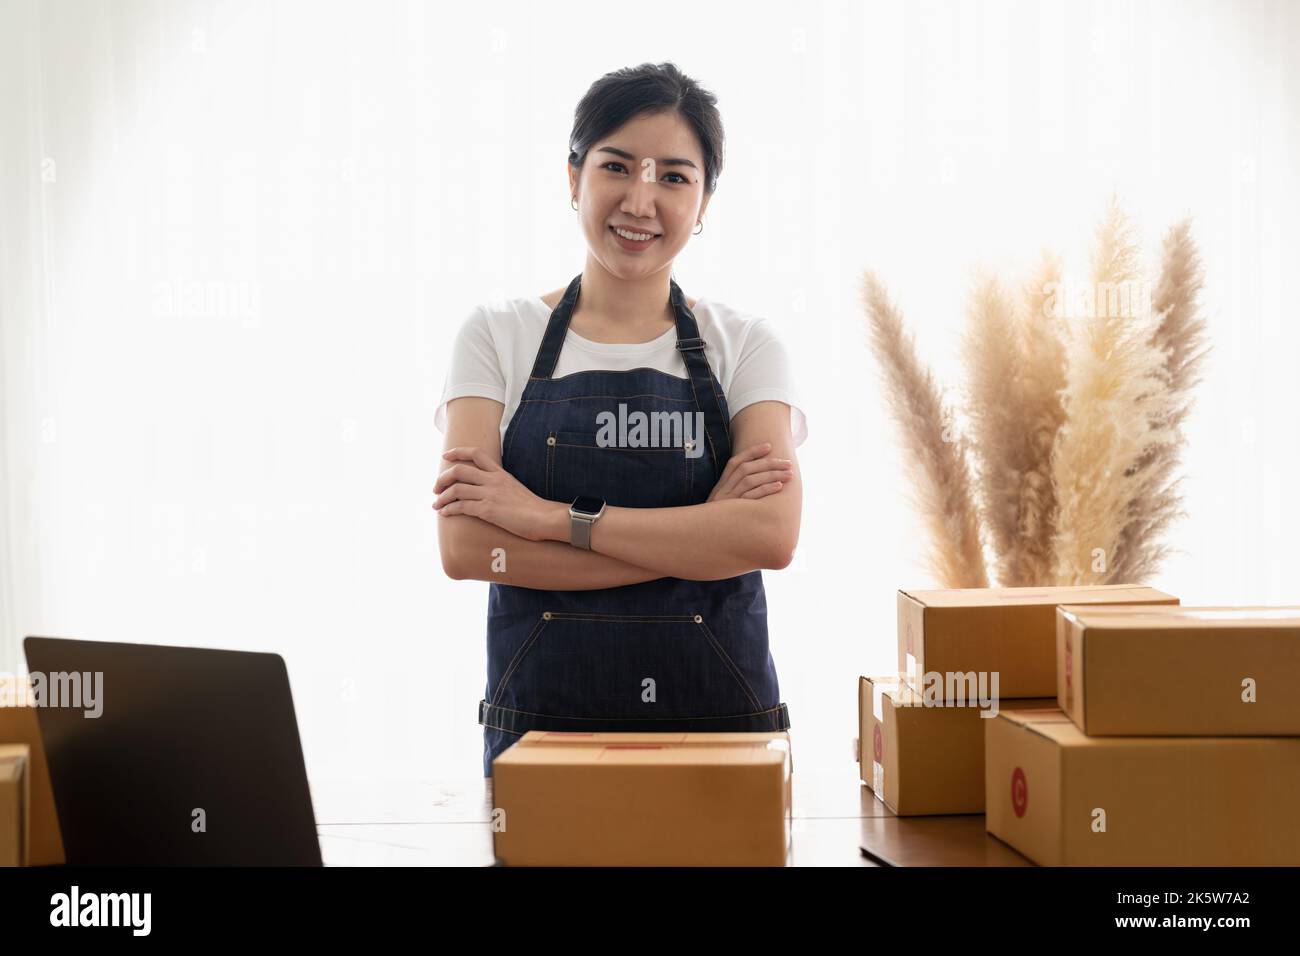 Portrait junger asiatischer Kleinunternehmer zu Hause, Online-Marketing-Verpackungs- und Lieferszene, Startup-KMU-Unternehmer oder freiberuflicher Mitarbeiter Stockfoto